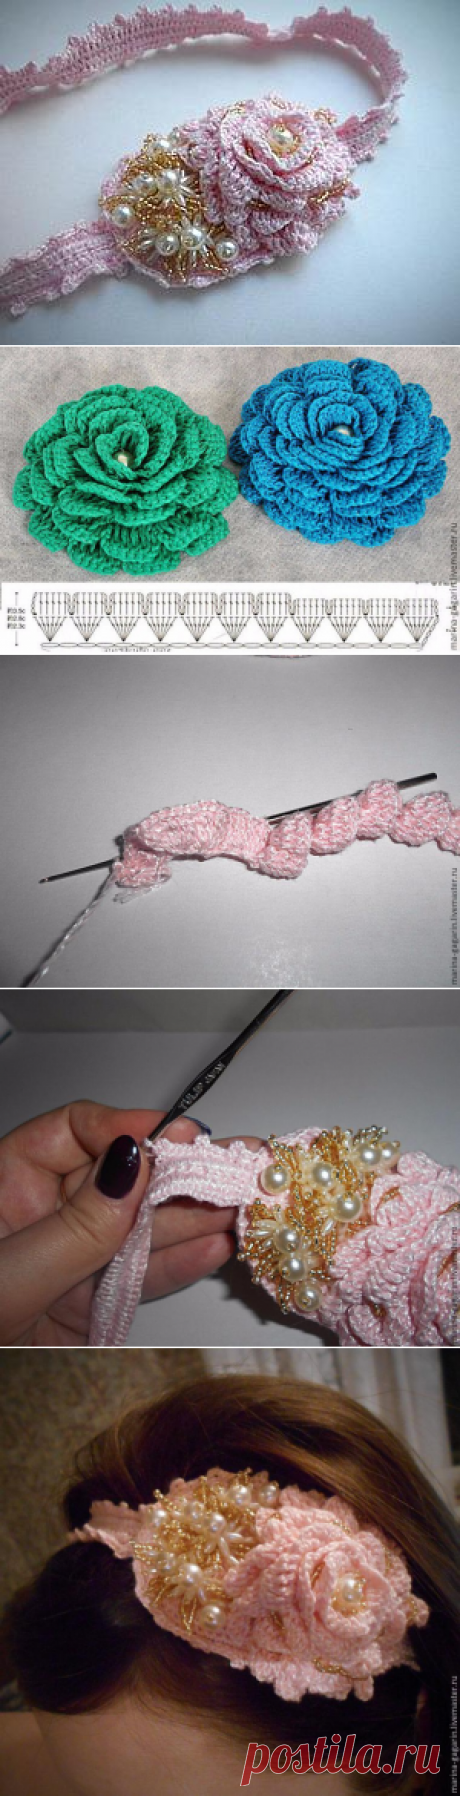 Создаём вязаную повязку-ободок на голову - Ярмарка Мастеров - ручная работа, handmade